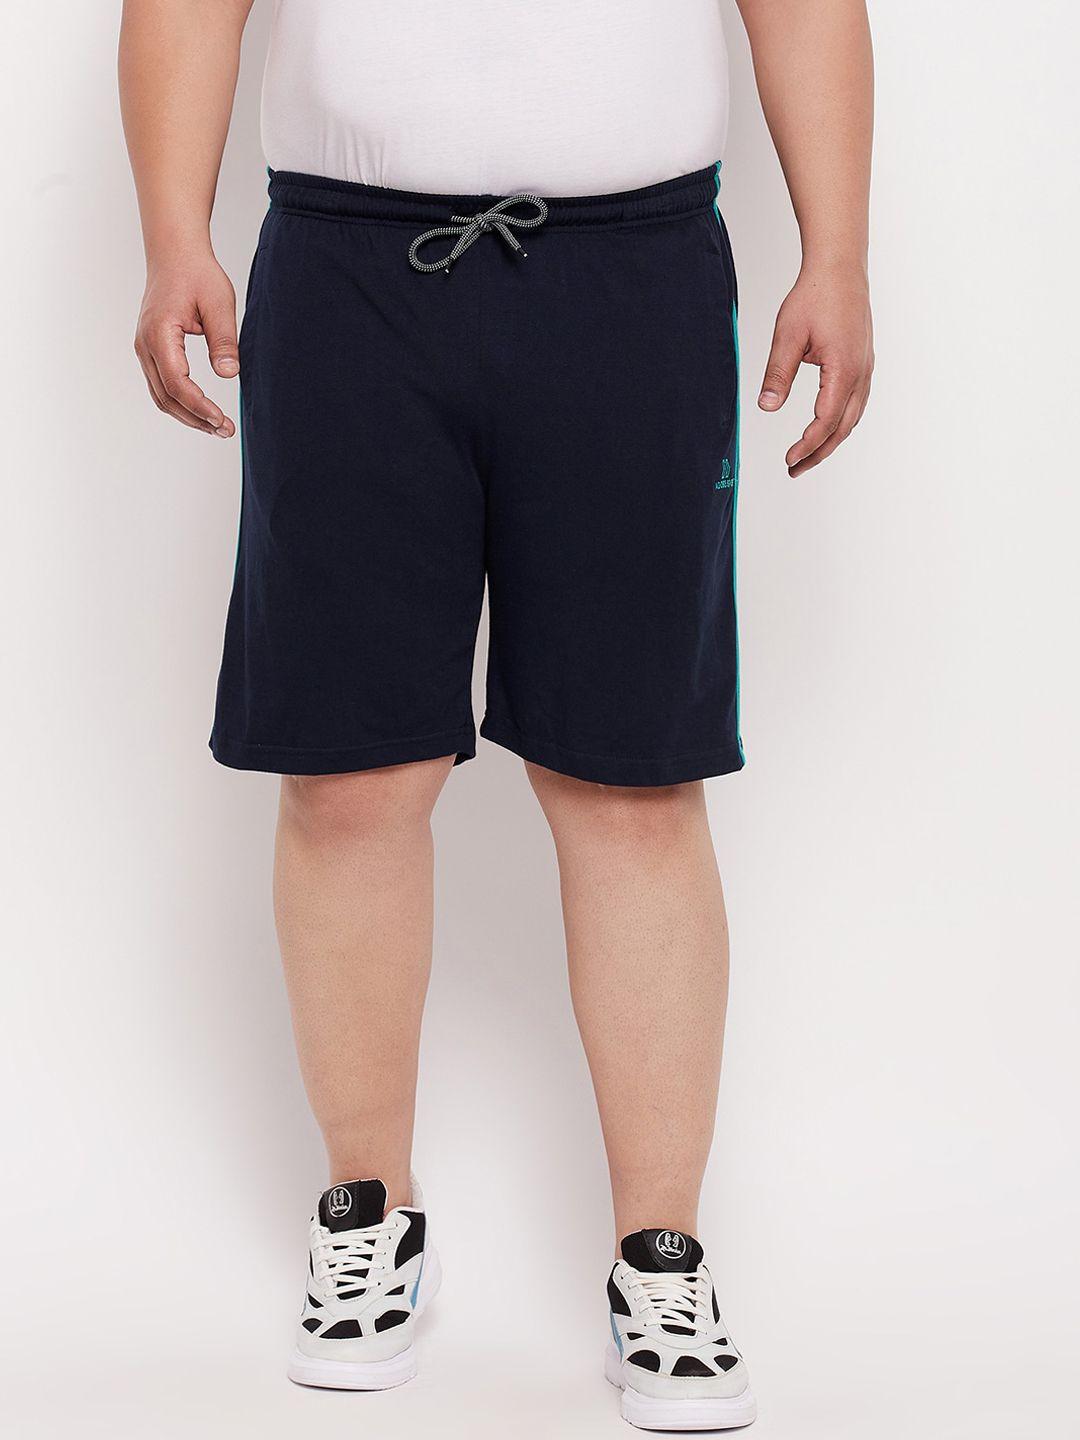 adobe-men-navy-blue-sports-shorts